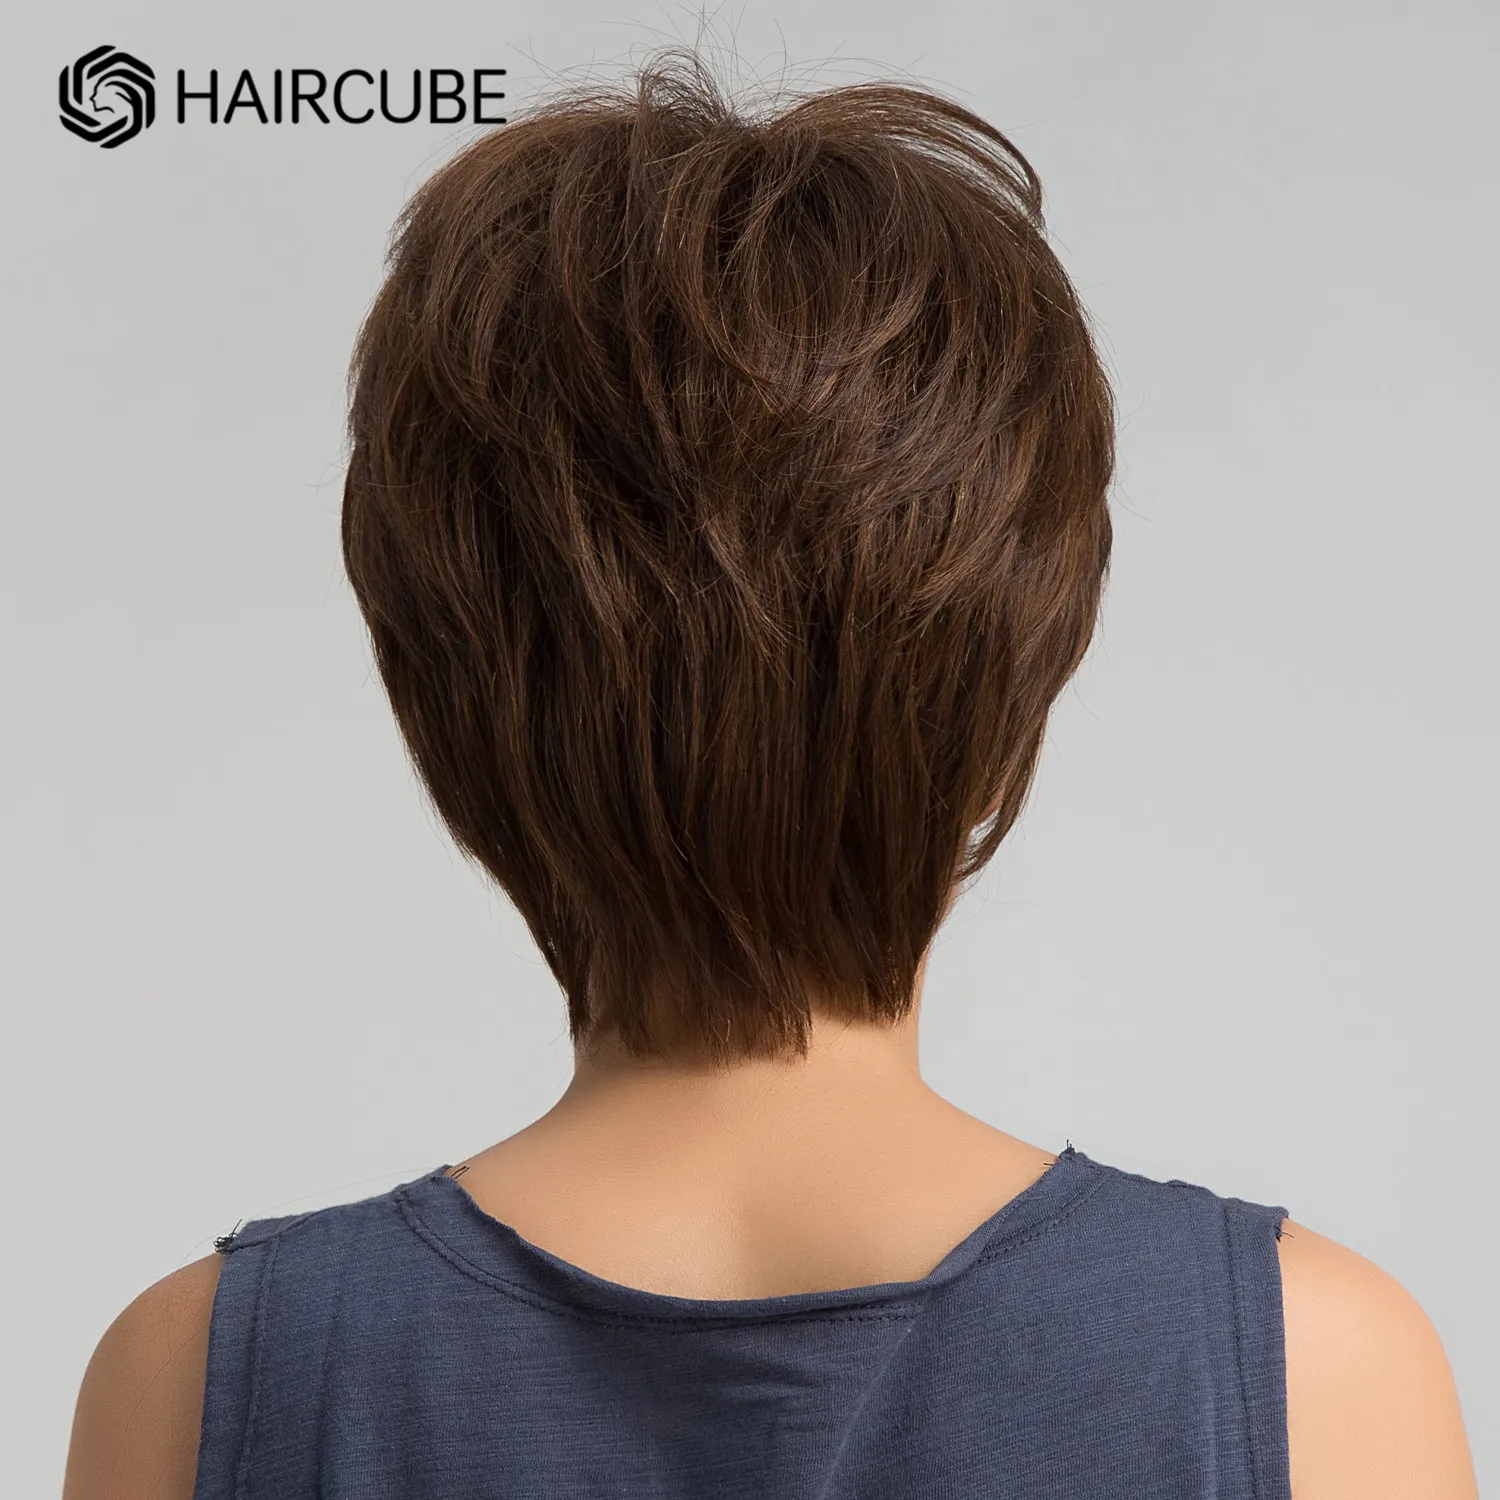 HAIRCUBE короткие шоколадно-коричневые человеческие волосы, смешанные парики для женщин, многослойный парик фальшивой резки с челкой, натуральные мягкие термостойкие волосы